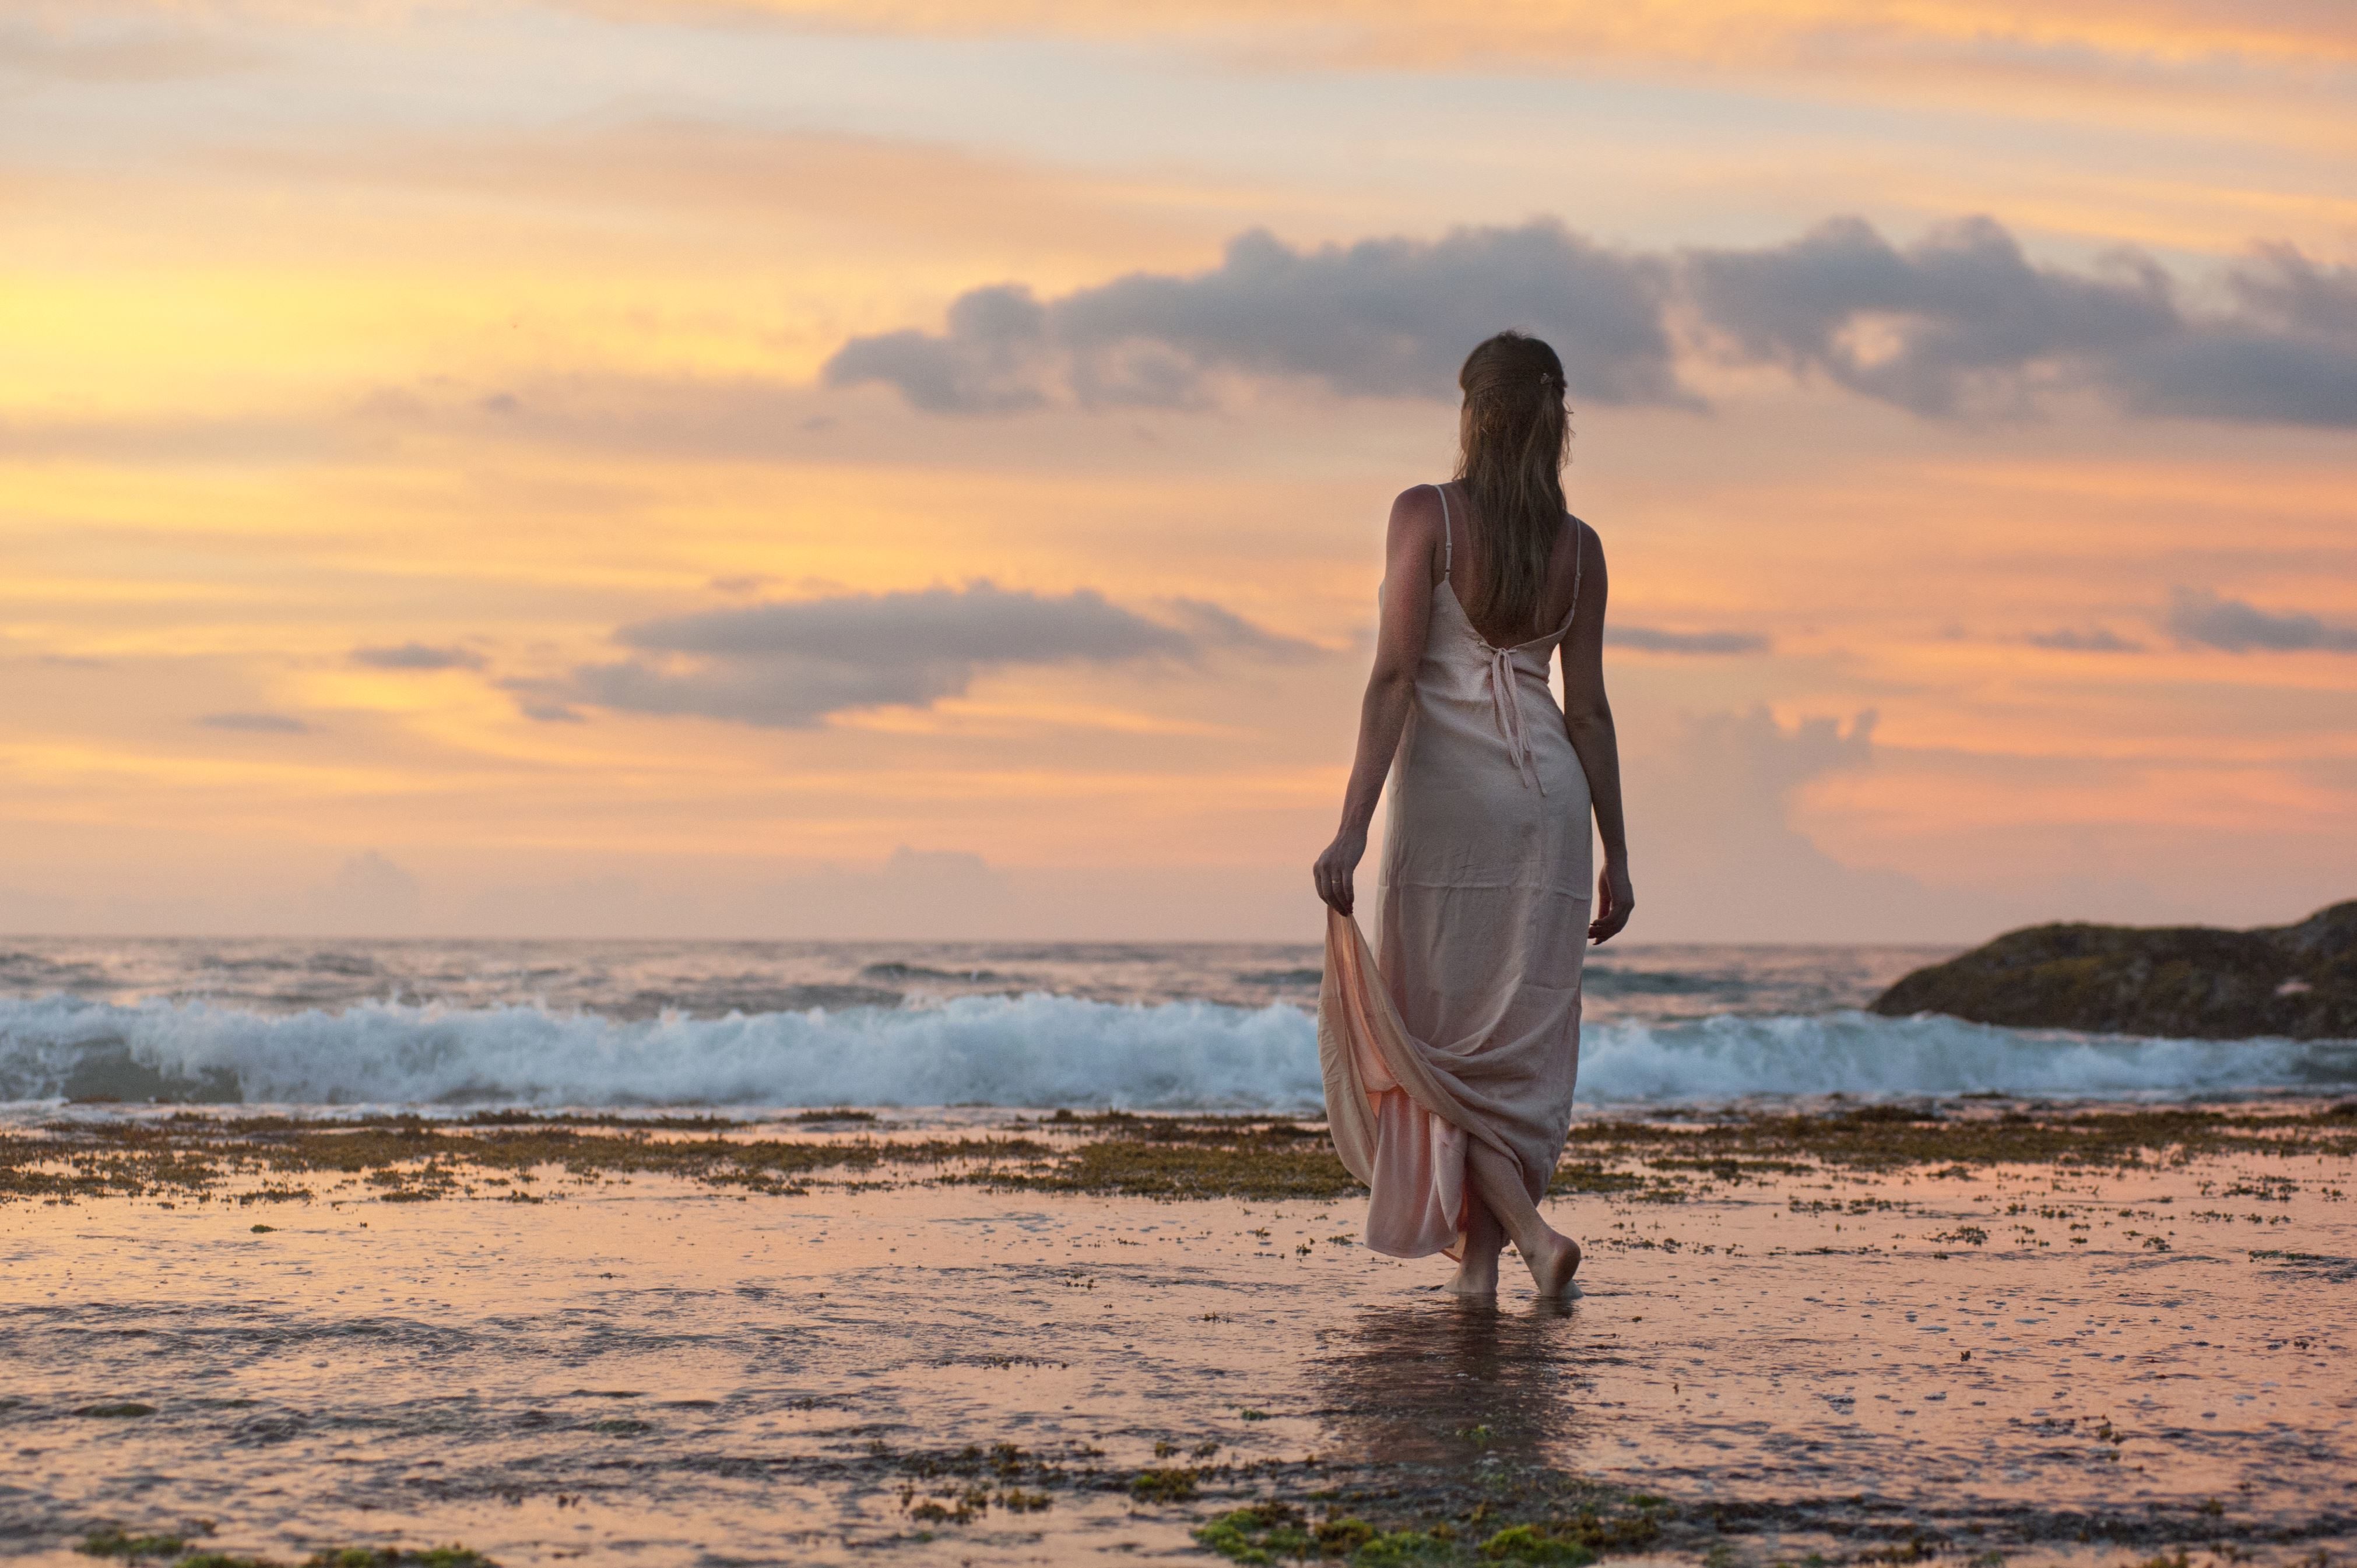 Бесплатное изображение: красивая девушка, ходьба, воды, пляж, океан, волны,  женщины, молодые